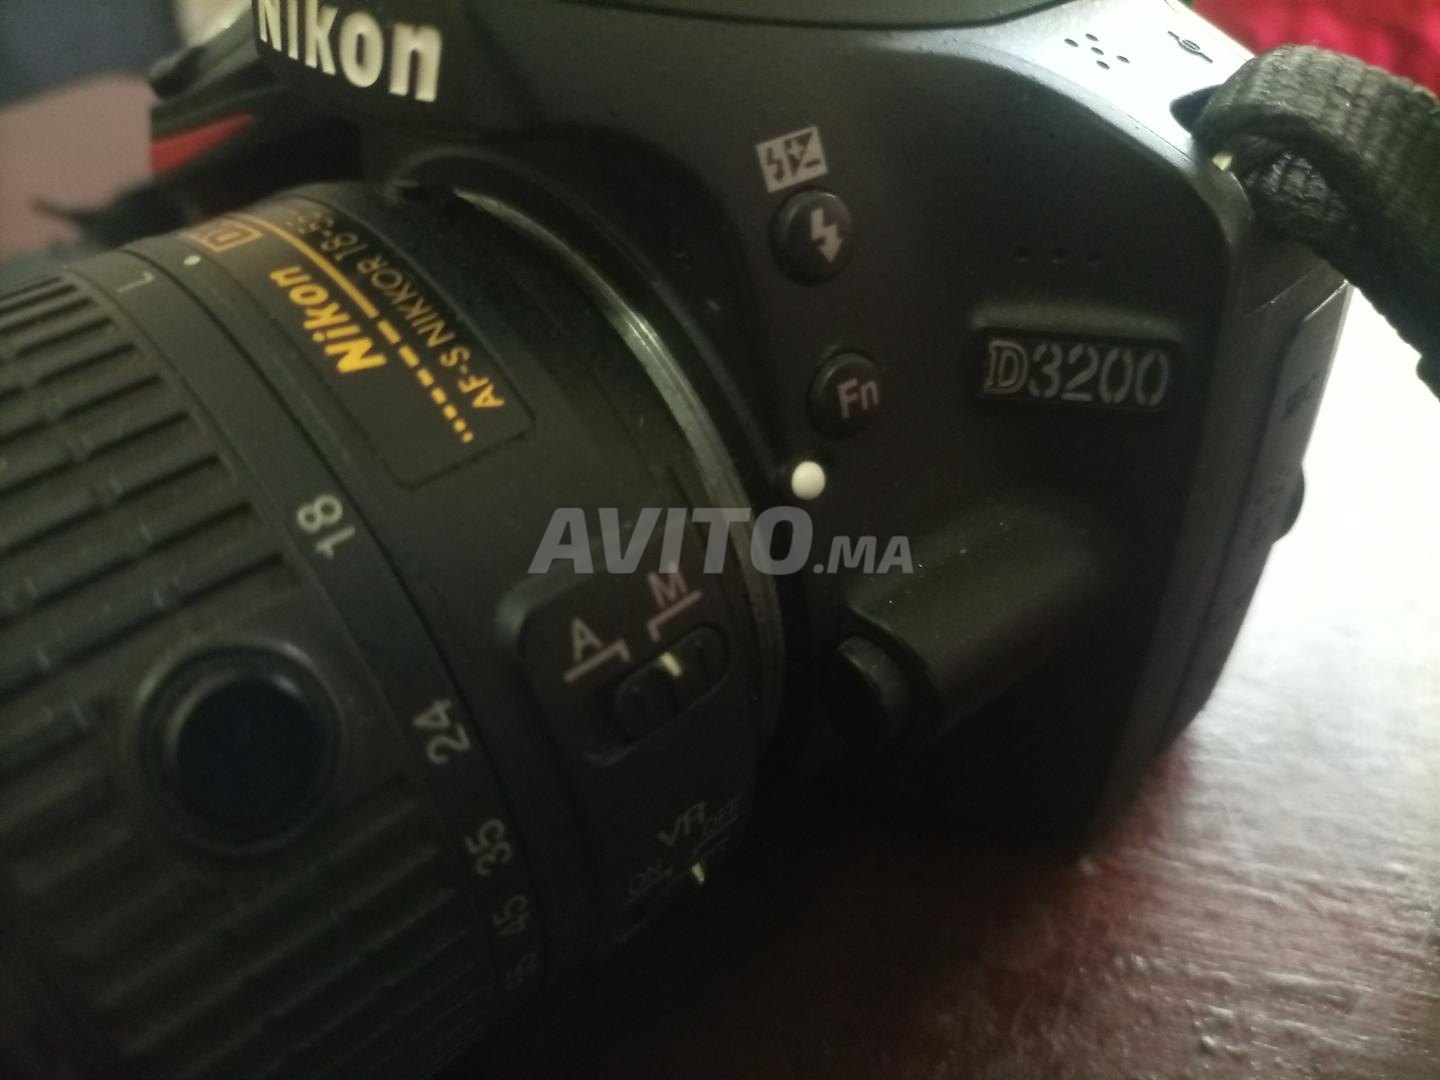 Nikon d3200 - 2